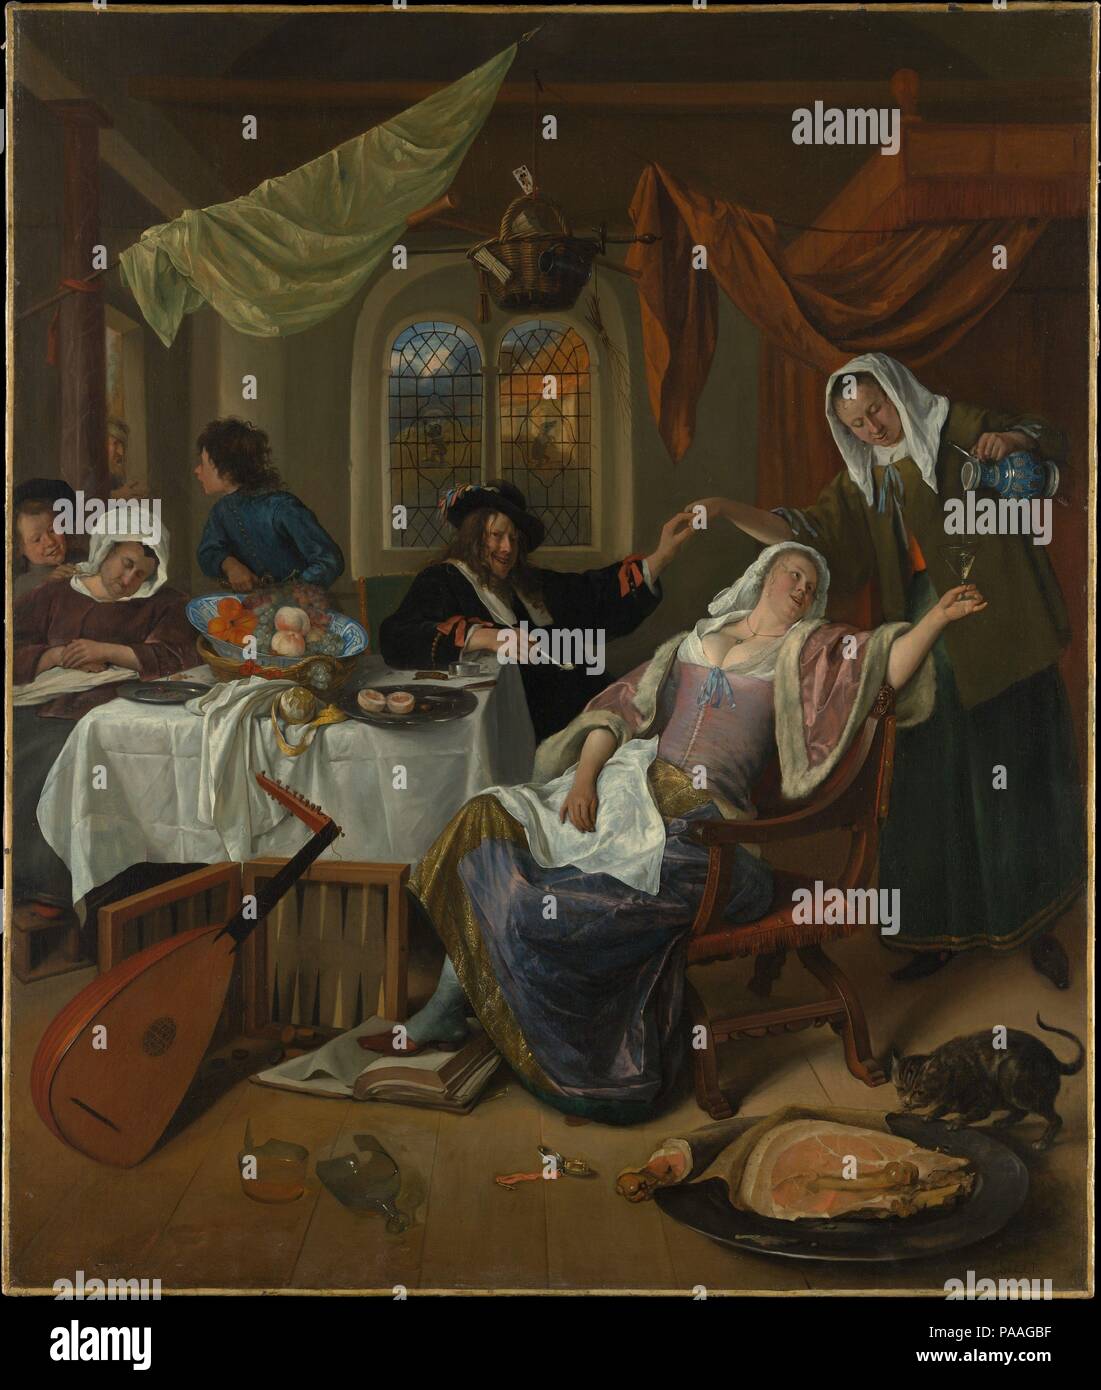 Les ménages dissolus. Artiste : Jan Steen (Néerlandais, Leyde Leyde 1626-1679). Dimensions : 42 1/2 x 35 1/2 in. (108 x 90,2 cm). Date : ca. 1663-64. Steen et les membres de sa famille sur le modèle pour cette scène de chaos, qui est encore appelé un 'Jan Steen ménage" aux Pays-Bas. La société agit sur une variété de péchés familiers, tels que la paresse, la gourmandise, la Luxure (papa et la femme de chambre), et d'autres infractions -- une Bible est foulé aux pieds, et un mendiant est repoussée à la porte--tous indépendamment de l'open watch, suggérant la tempérance, et la corbeille suspendue comme sort sur leur tête (les objets dans ce pov Banque D'Images